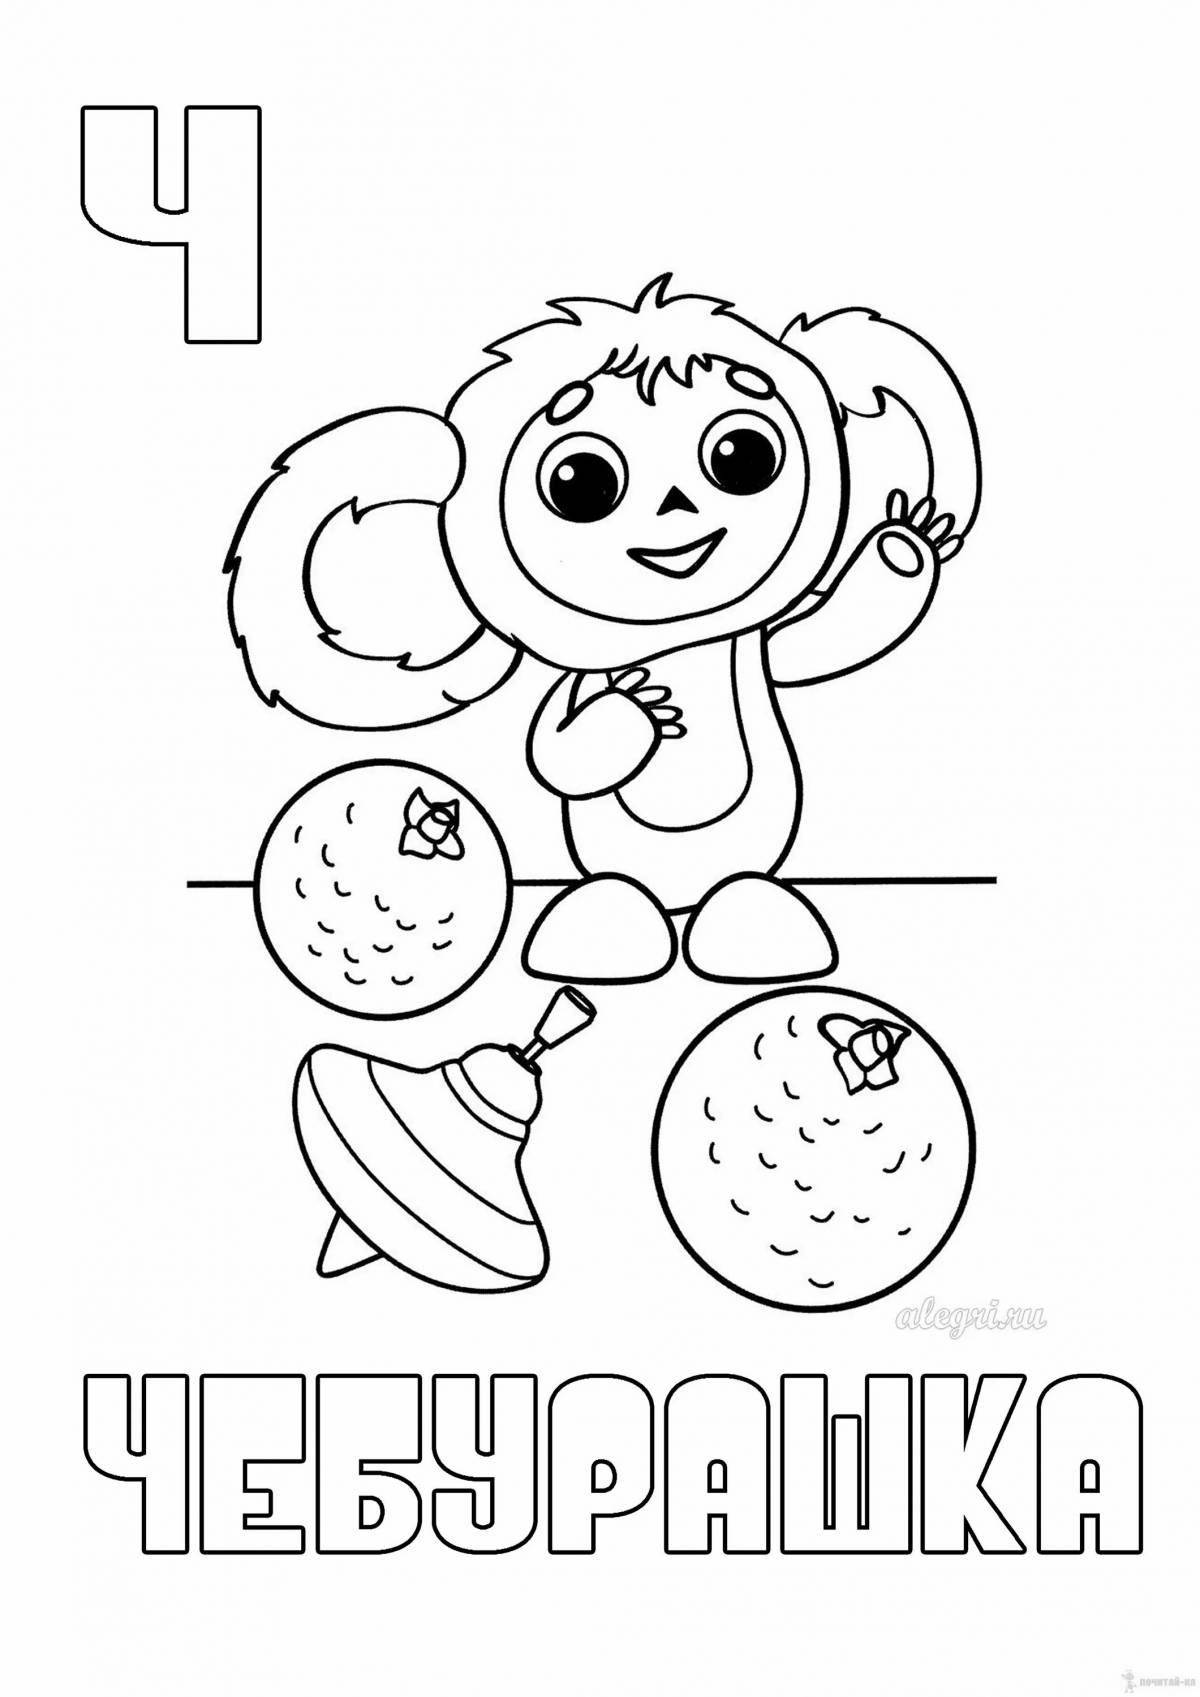 From the cartoon cheburashka #1